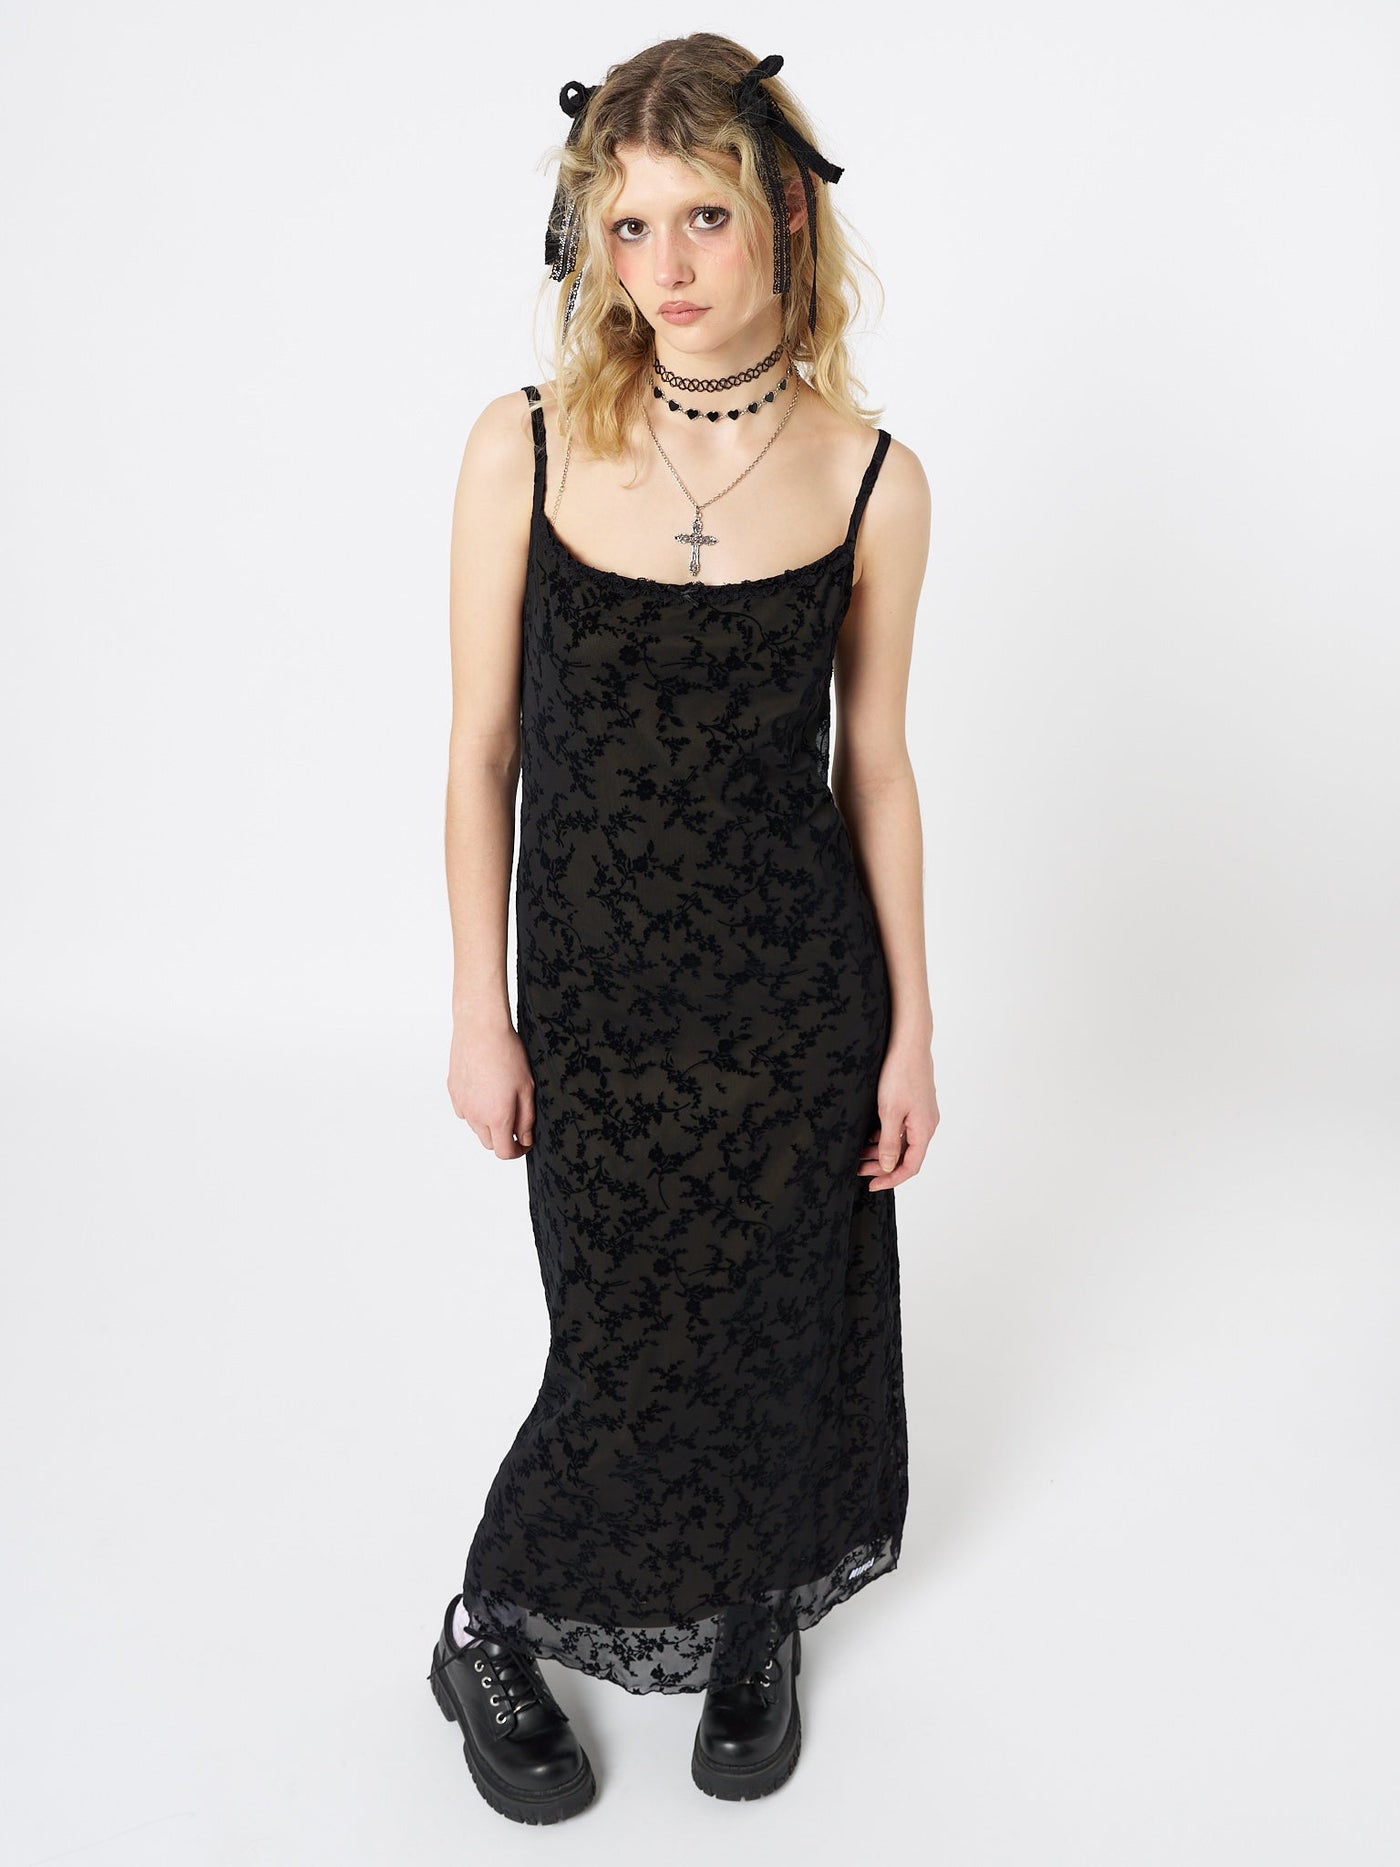 Titania Black Mesh Maxi Dress - Minga  US